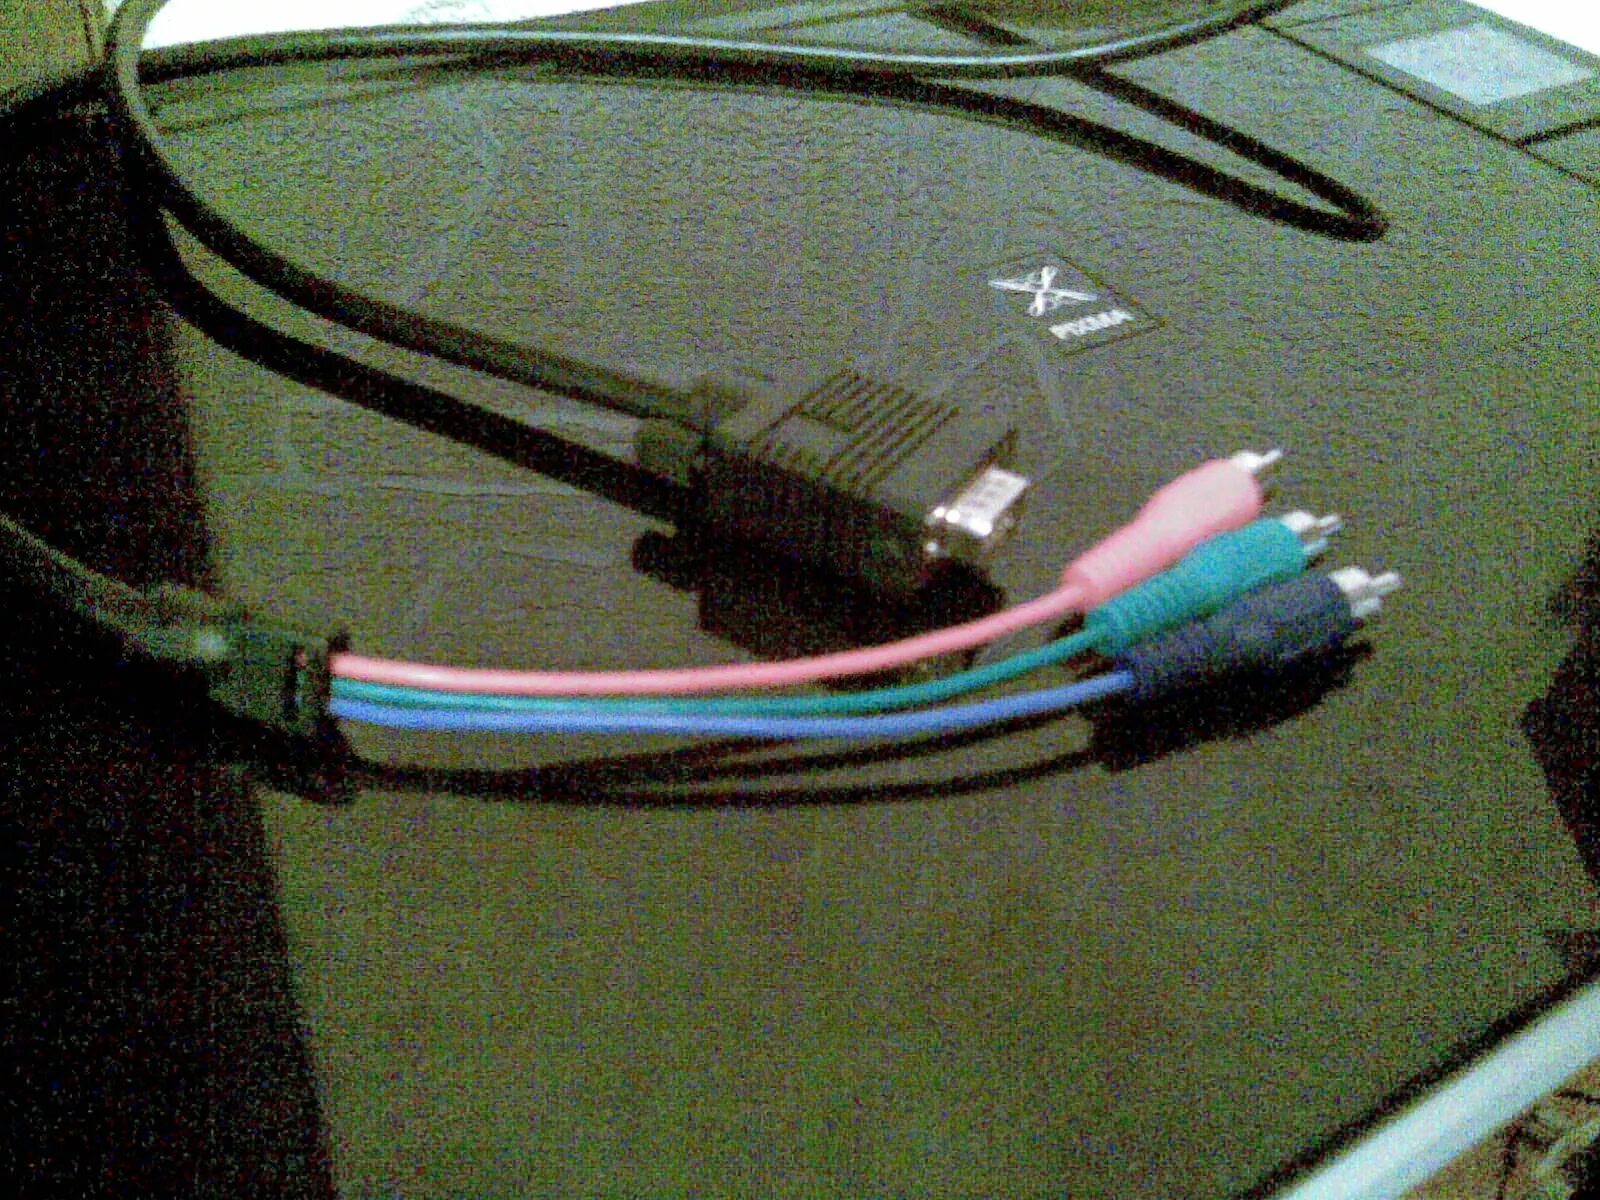 Телевизор без usb. Кабель LCD на телевизоре. Переходник разъемник с декодера Акадо к телевизору. Соединение лсд монитора к компьютеру. Штекера зеленый синий красный для подключения караоке на телевизор.